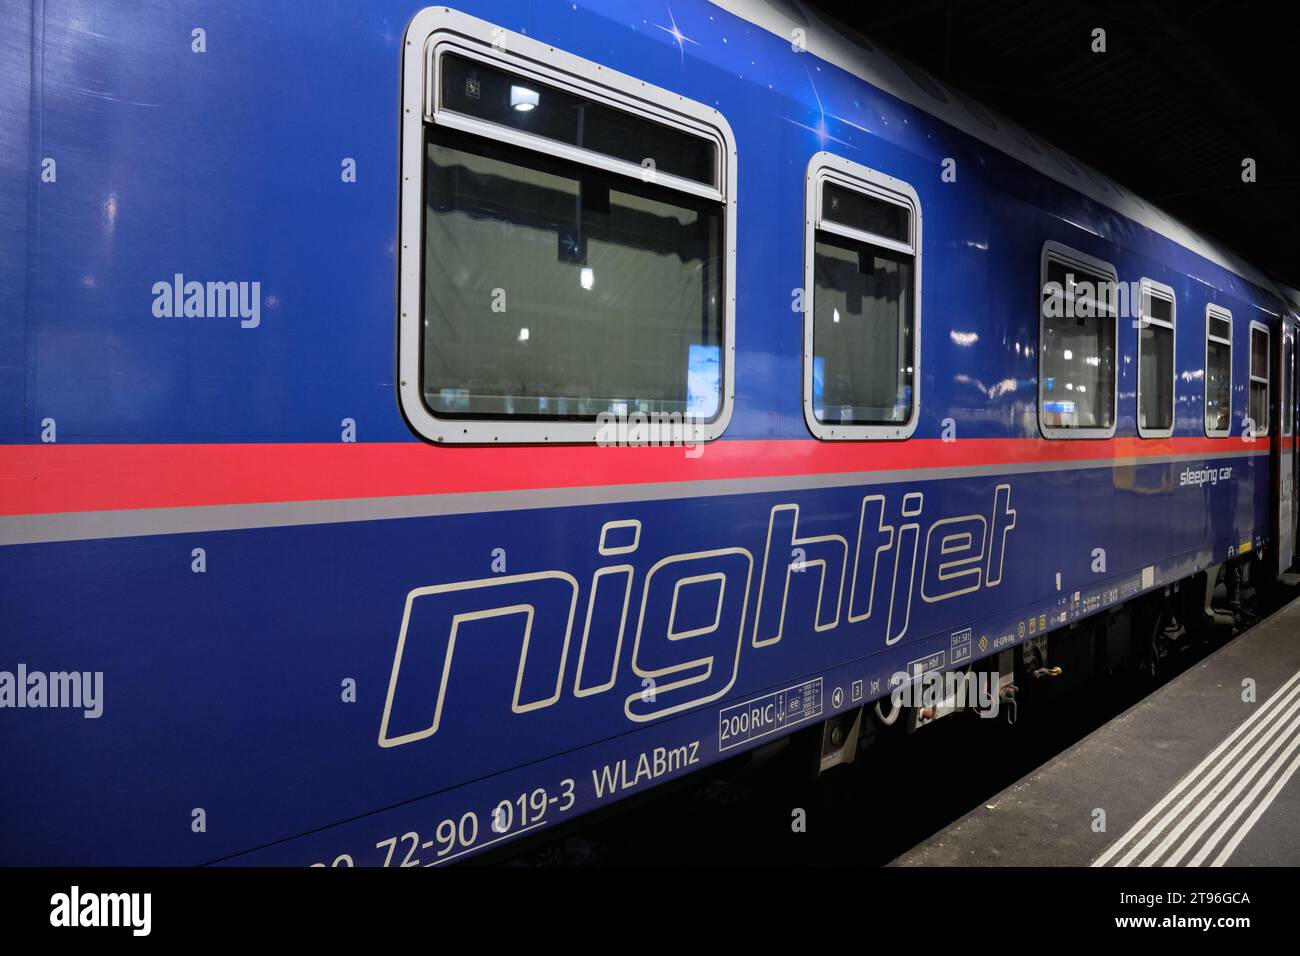 A nightjet sleeper train on platform of station.  Zurich, Switzerland. Stock Photo